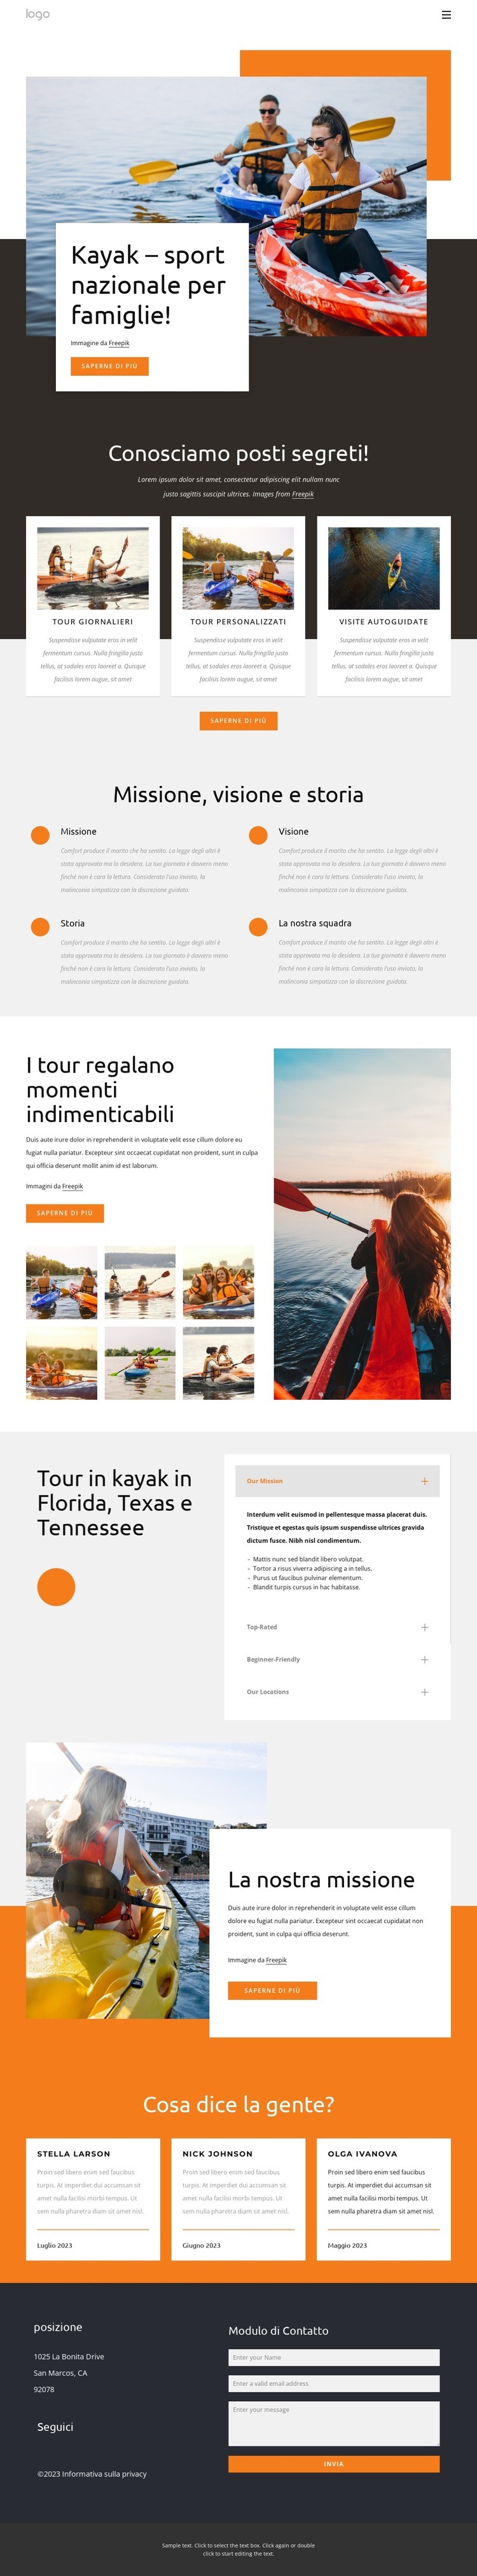 Kayak - sport nazionale per famiglie Mockup del sito web